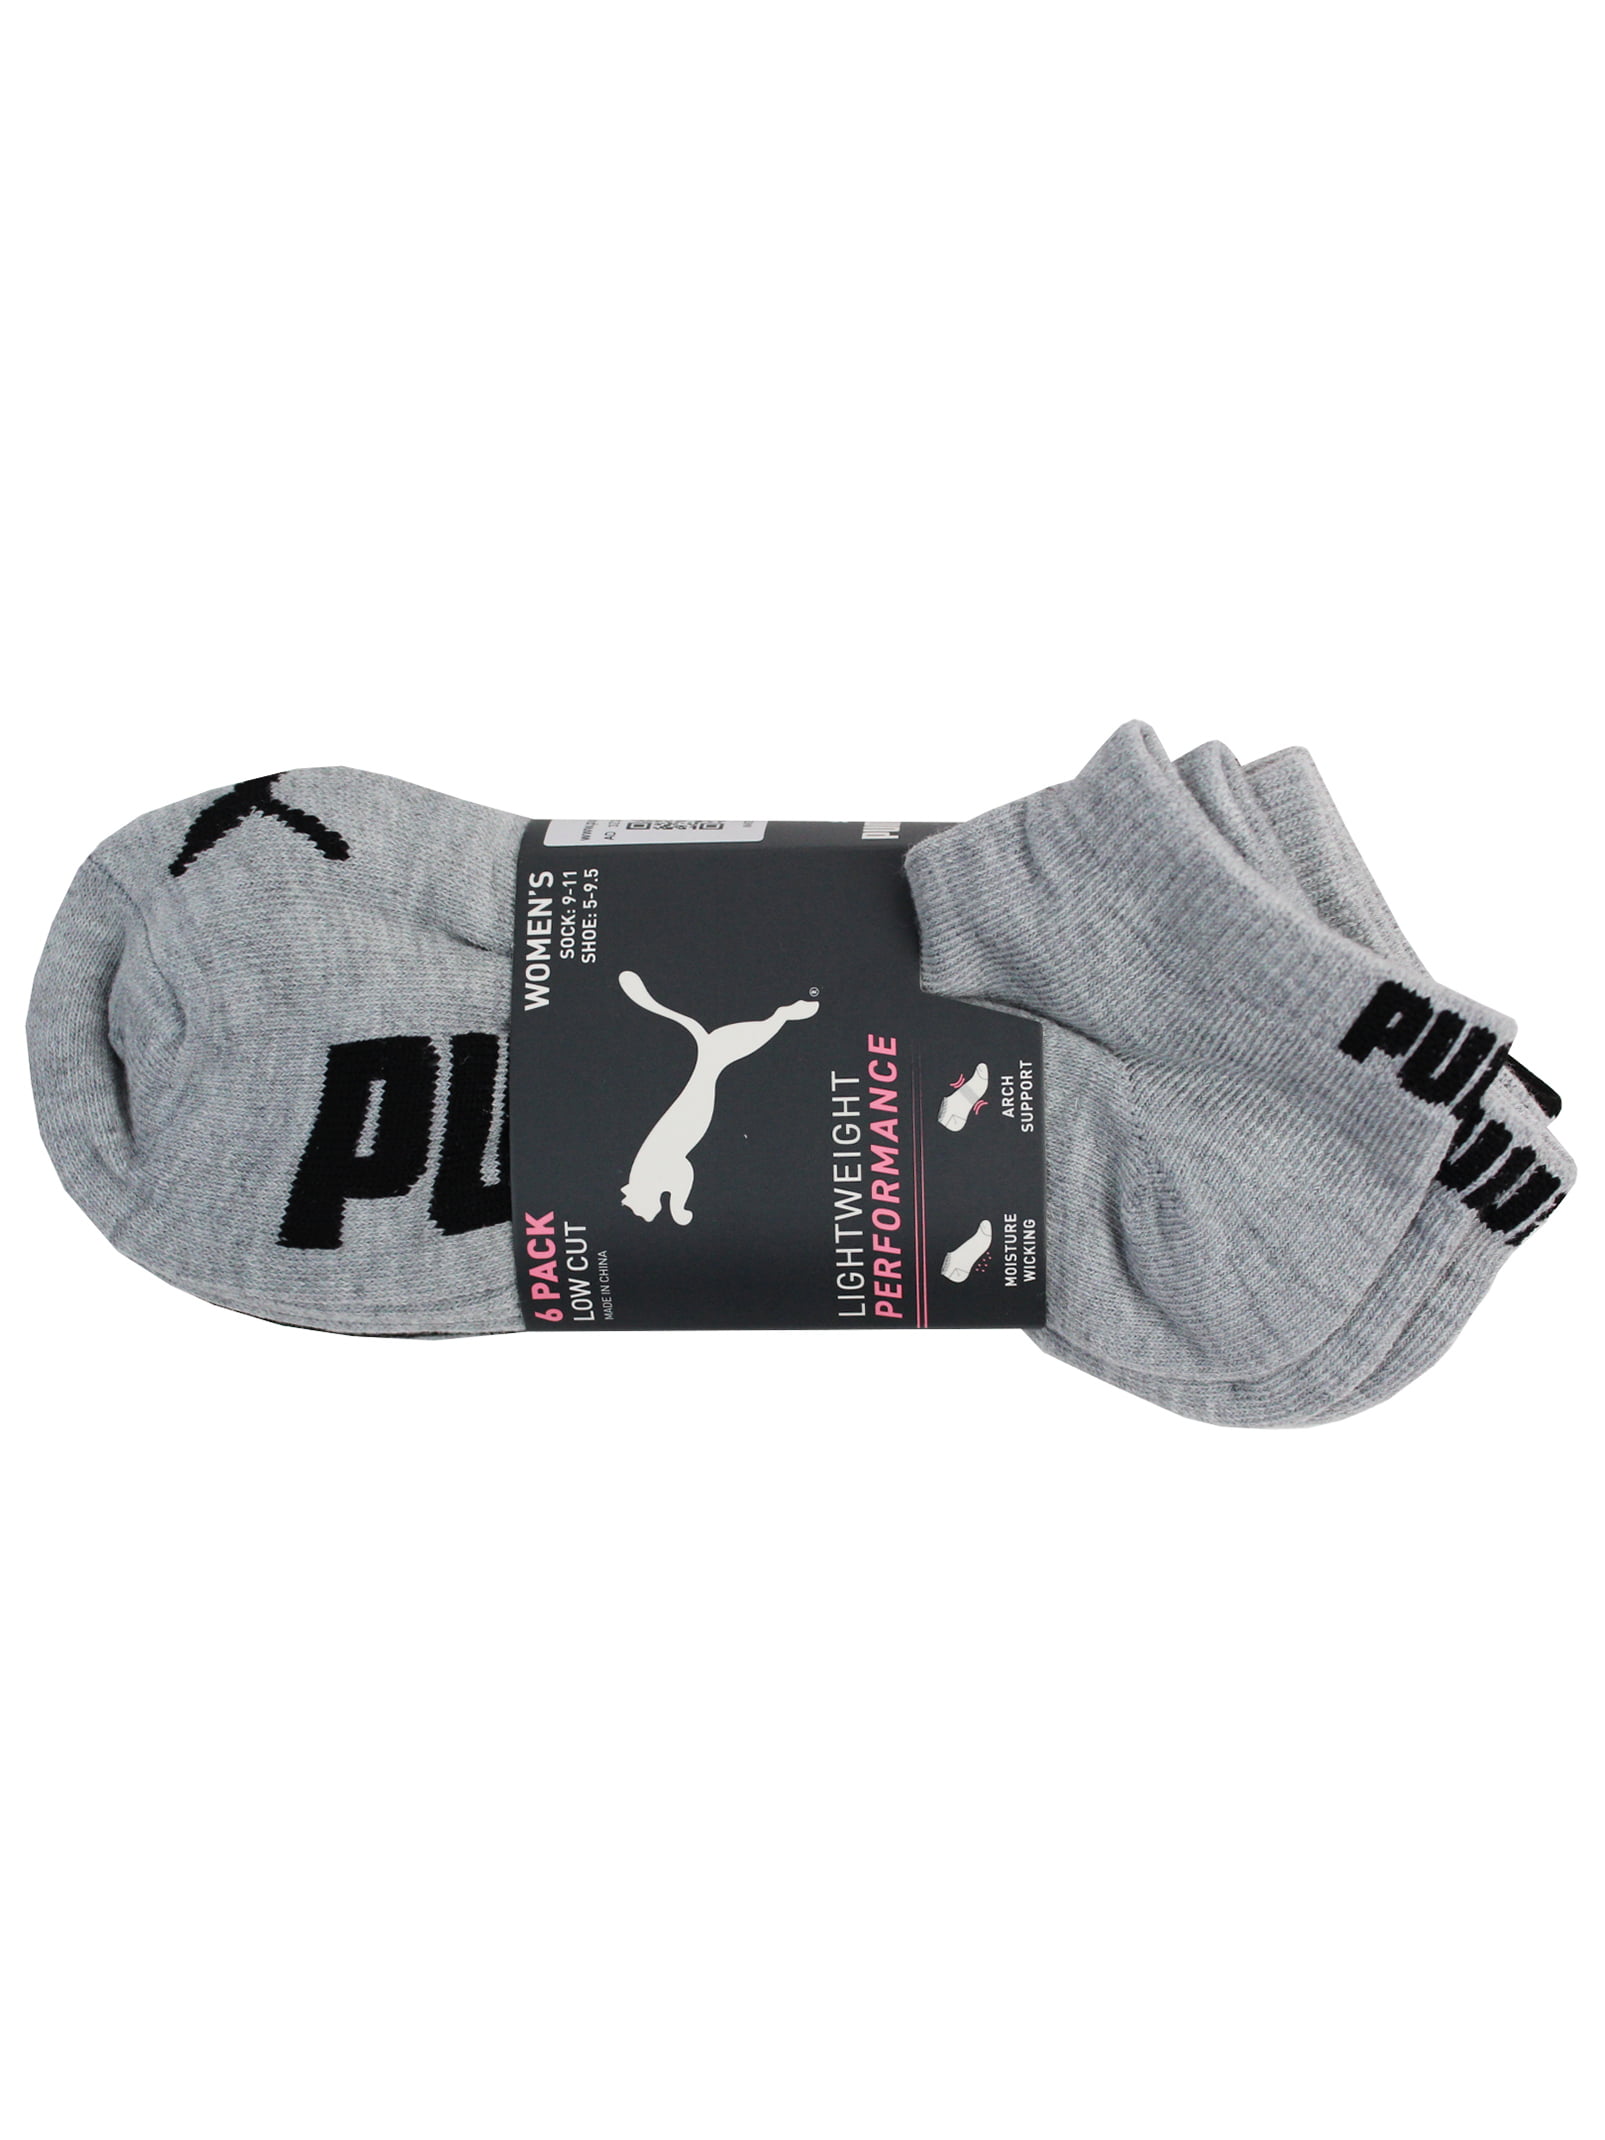 puma womens socks